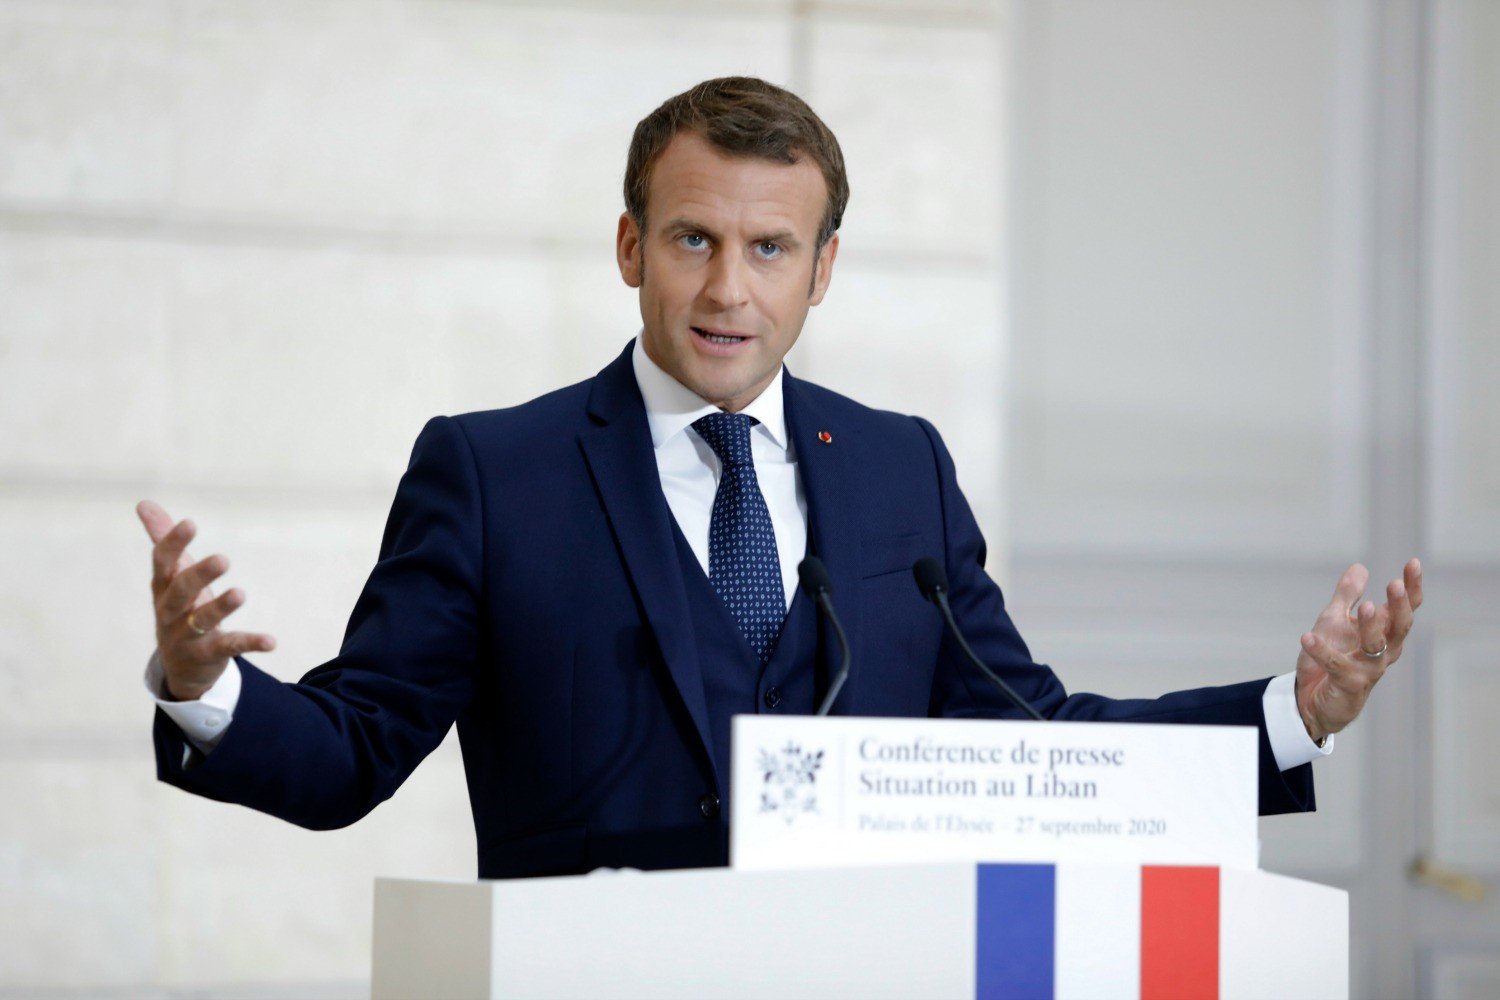 For Macron, Being Right on European Strategic Autonomy Isn’t Enough